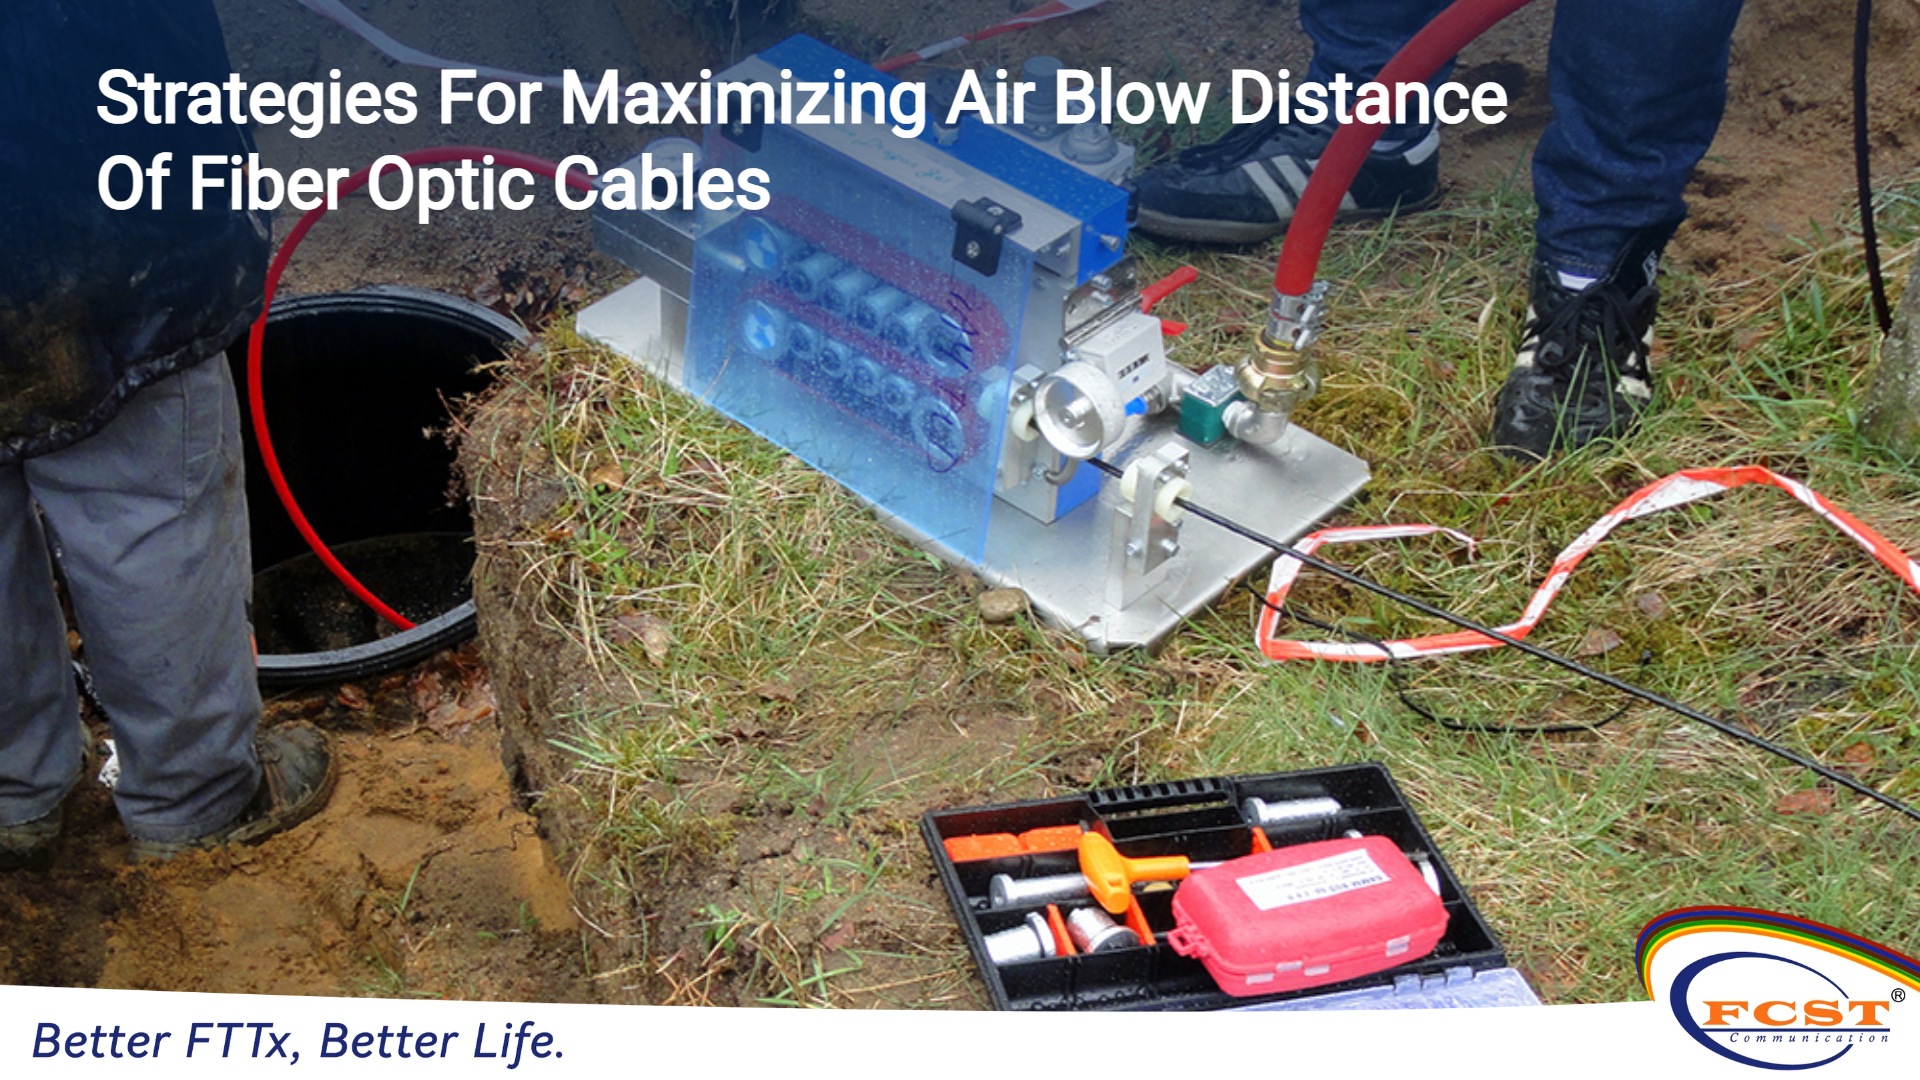 Stratégies pour maximiser la distance de soufflage d'air des câbles à fibres optiques